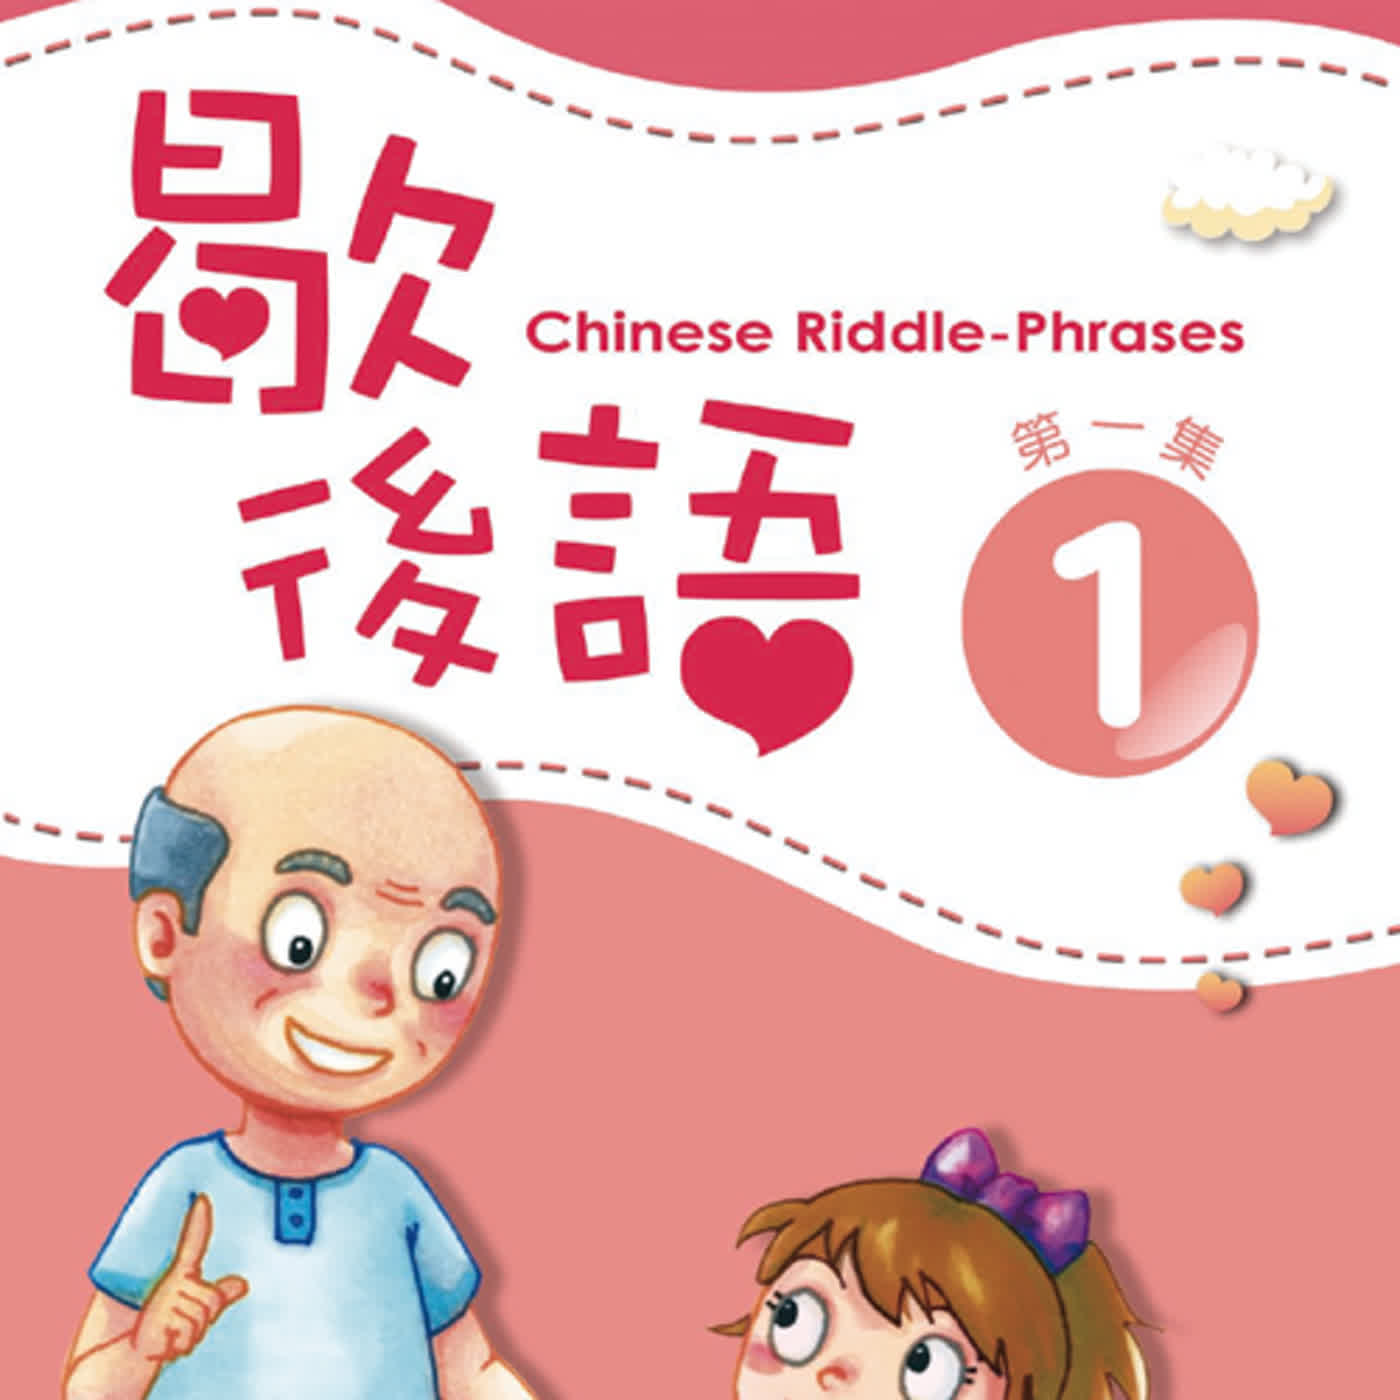 歇後語1 L17  Chinese Riddle-Phrases L17